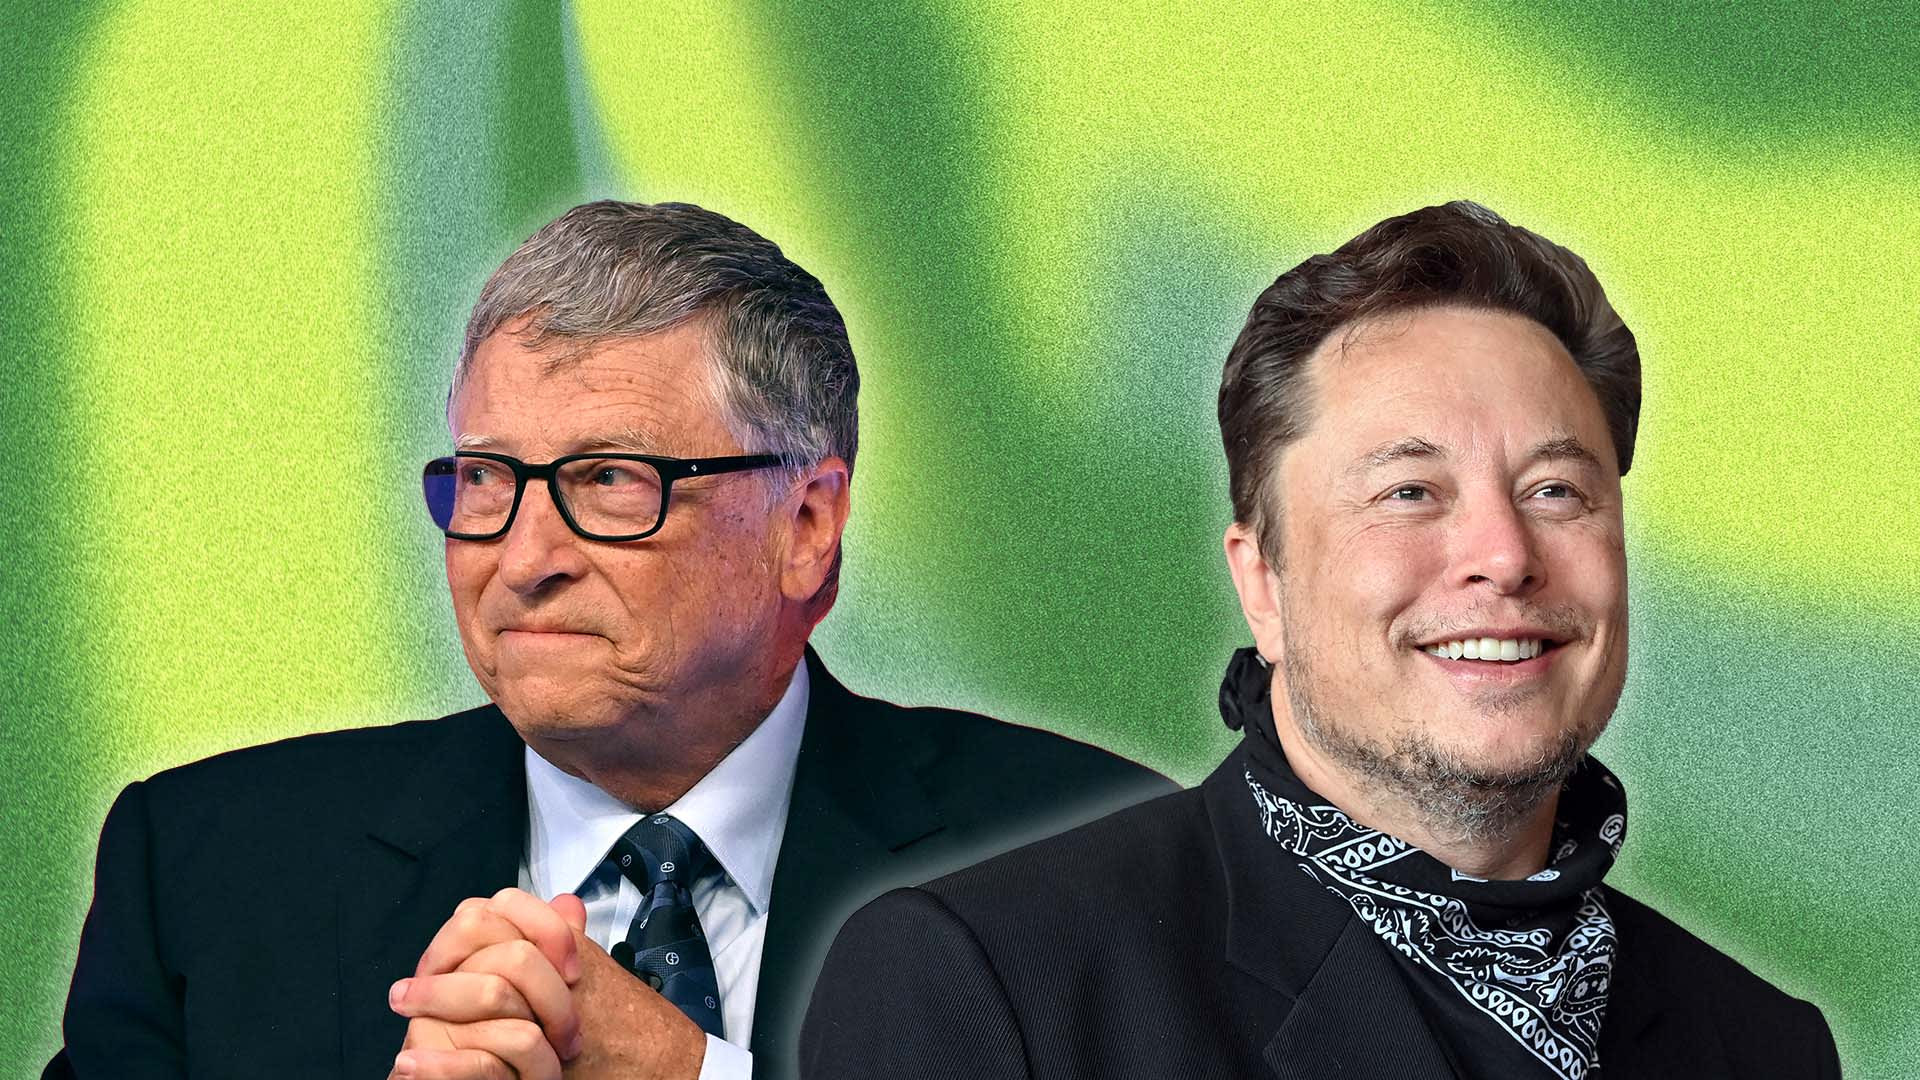 Khai phá cách tối ưu sức mạnh thời gian mà tỷ phú Elon Musk và Bill Gates đều áp dụng - Ảnh 1.